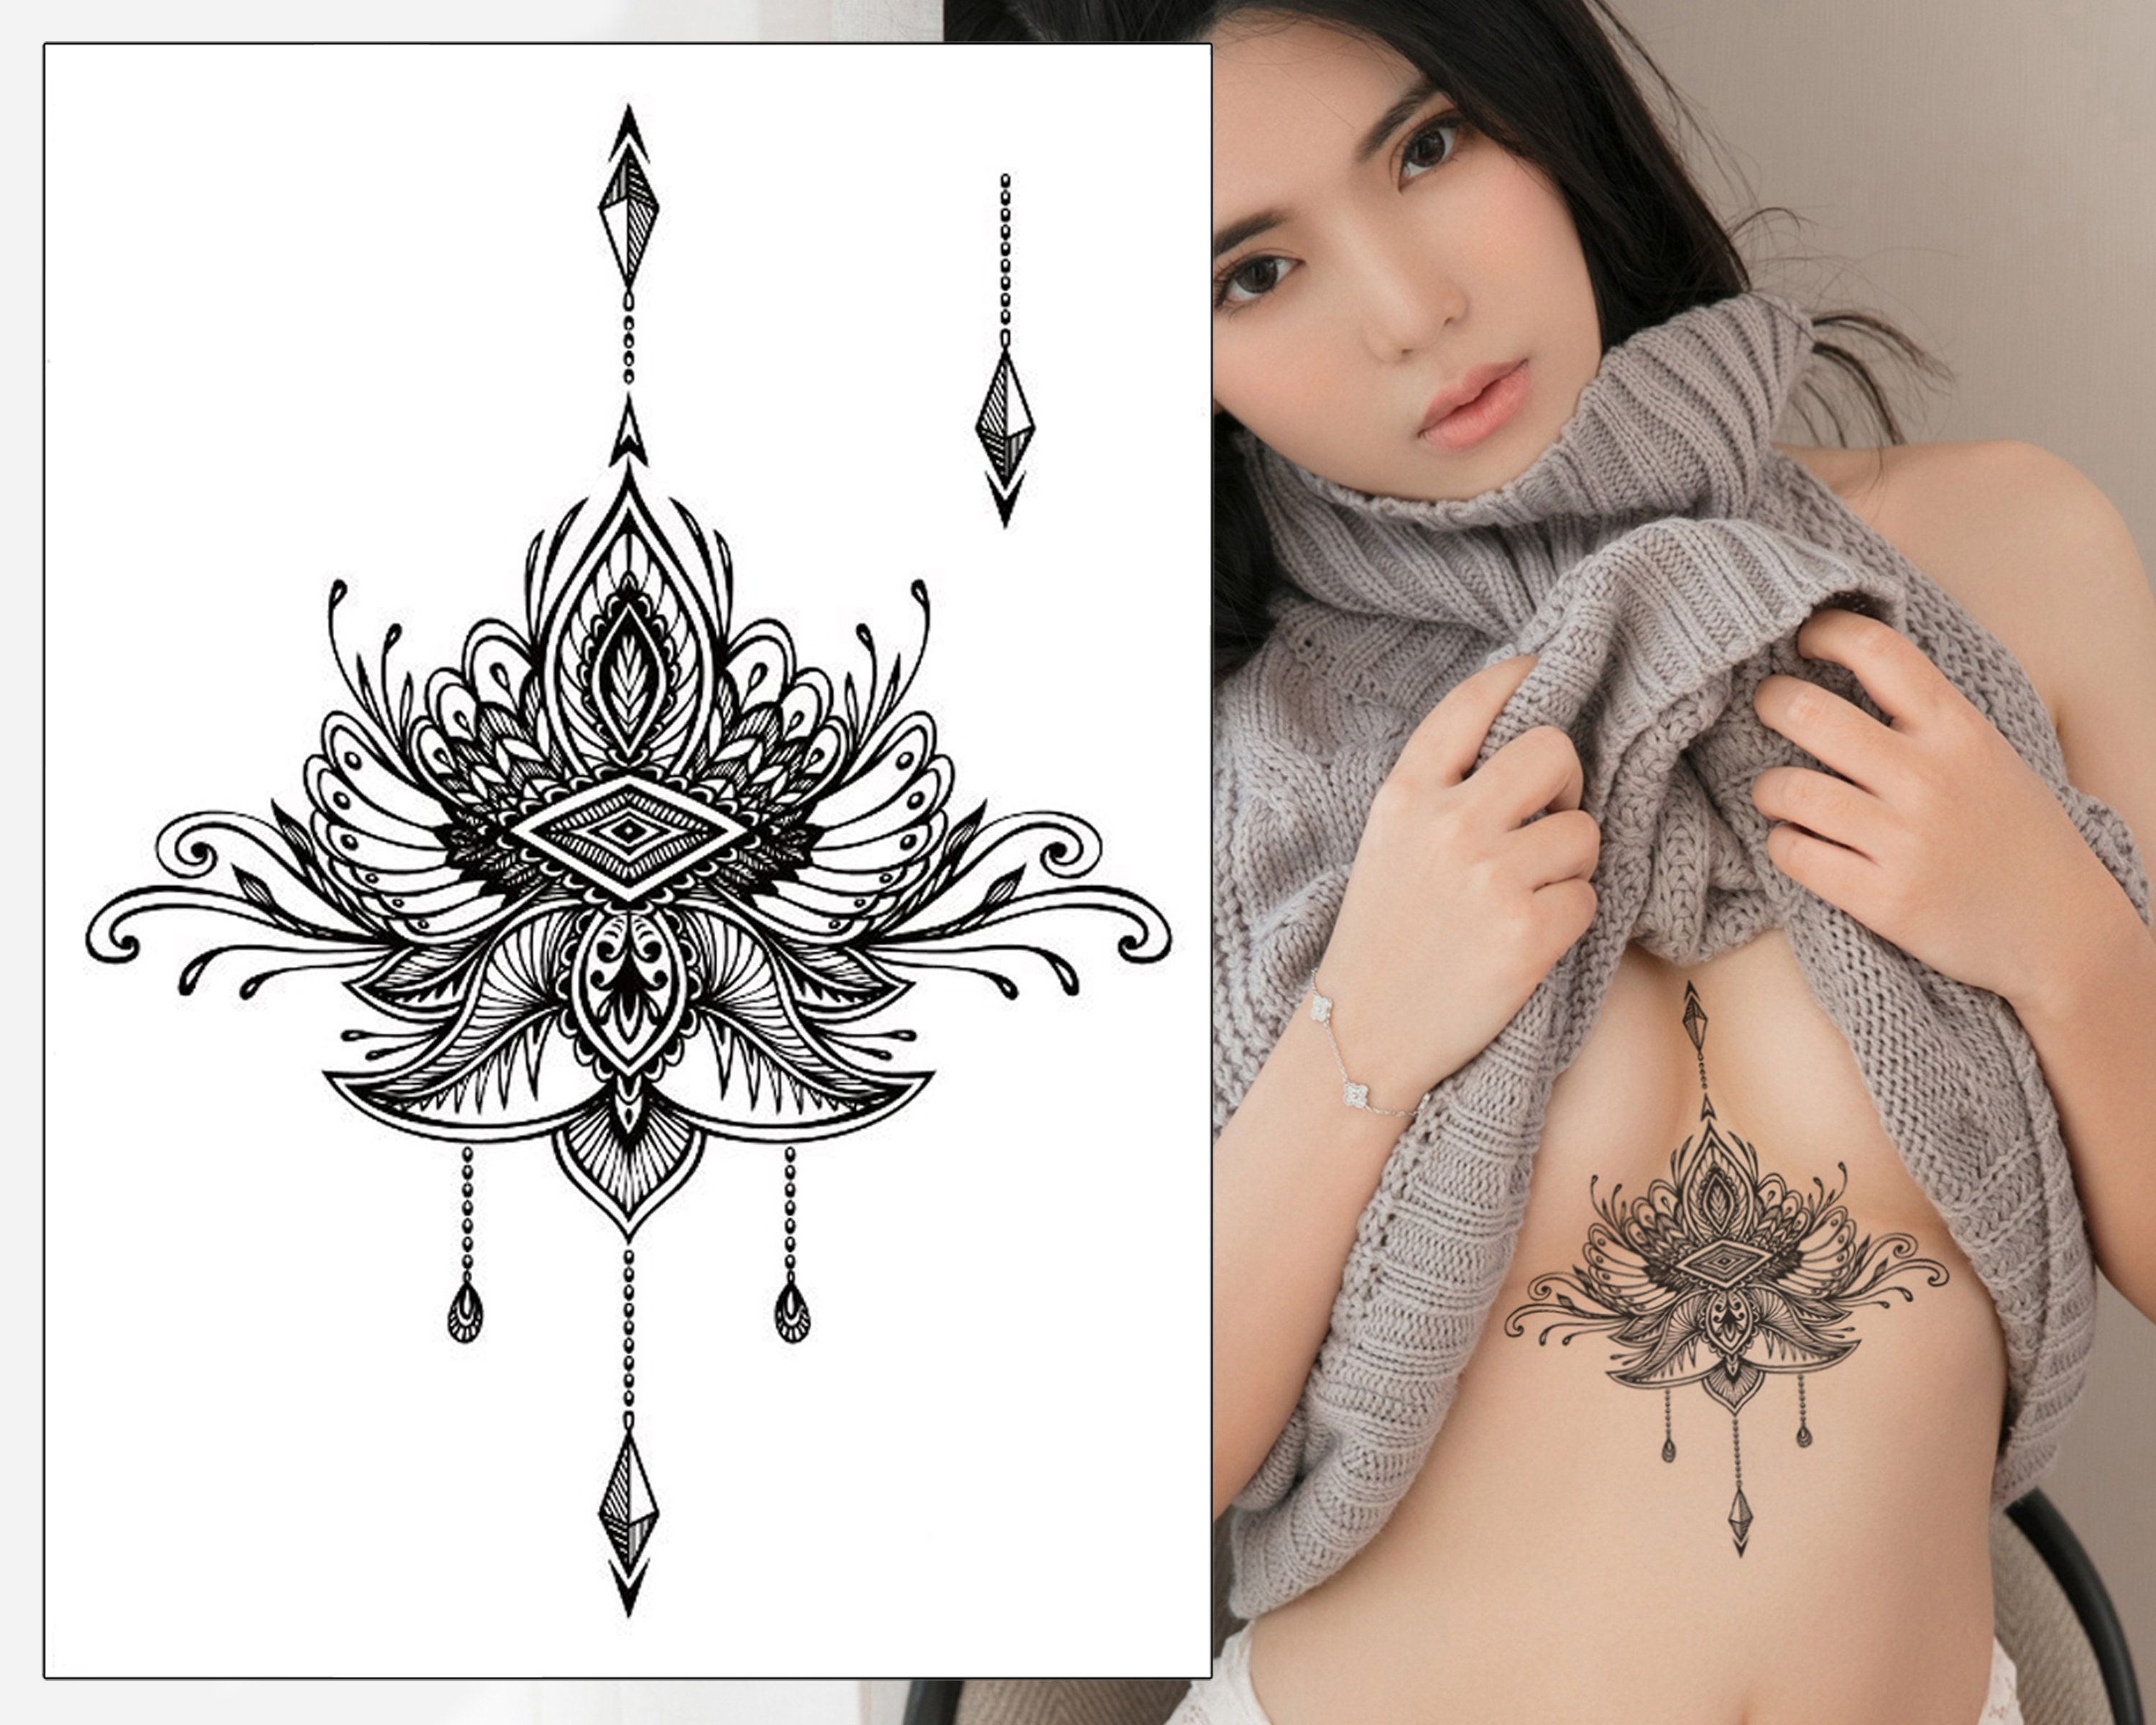 under boob tattoo mandala lotus by doristattoo on DeviantArt